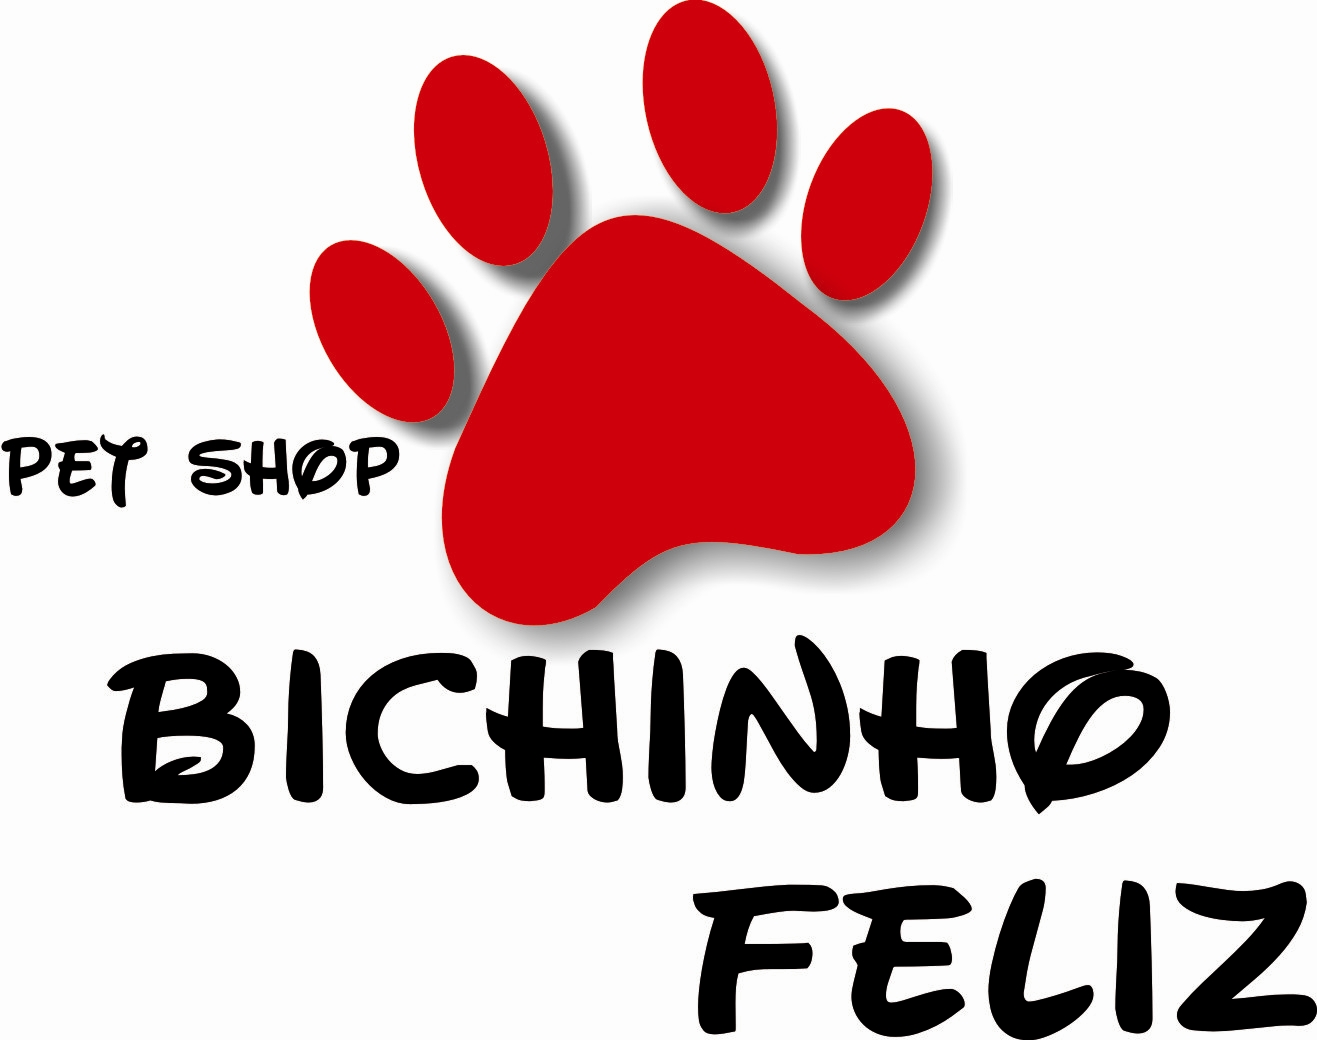 Pet shop always on my. Petshop логотип. Pets лого. Вывески логотипы Pet shop. Зоовый магазин логотип.